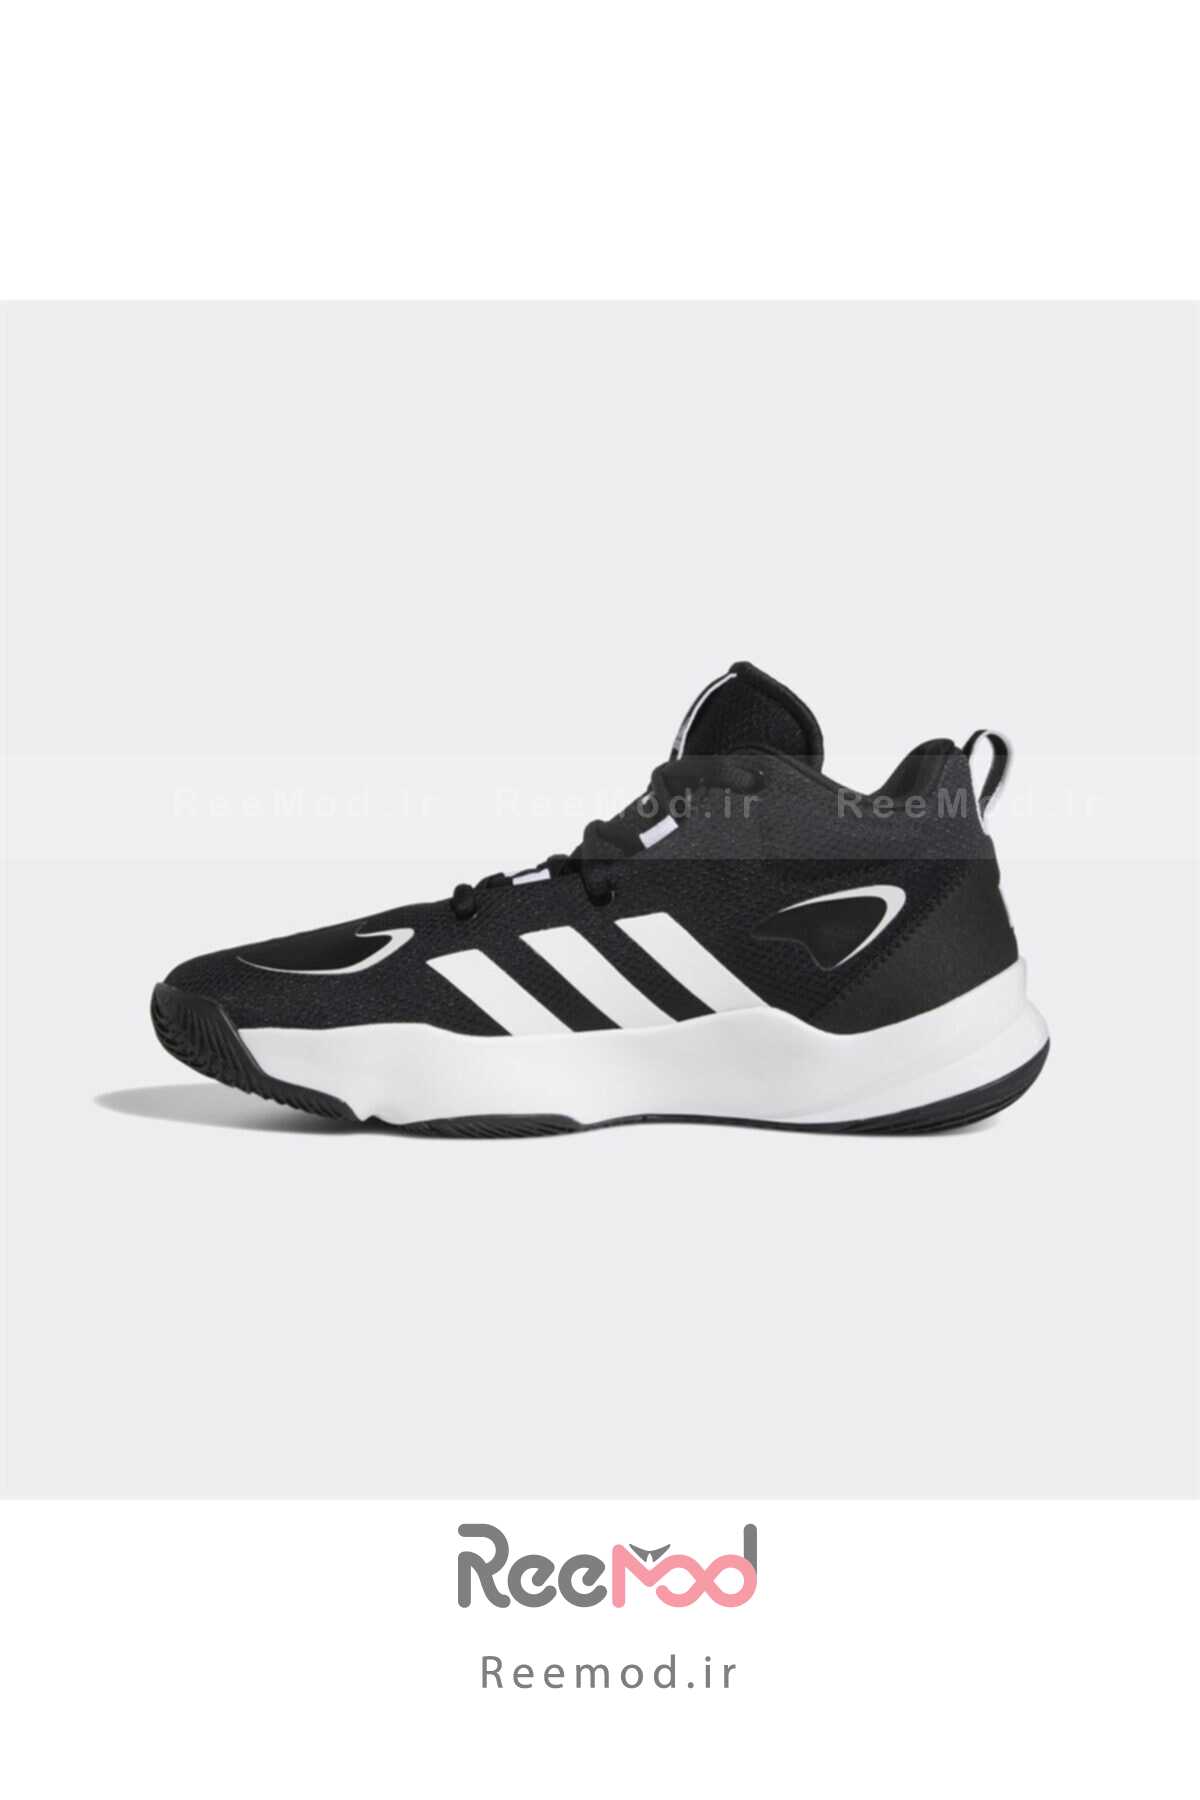 کفش بسکتبال مردانه دو رنگ مشکی سفید برند adidas 